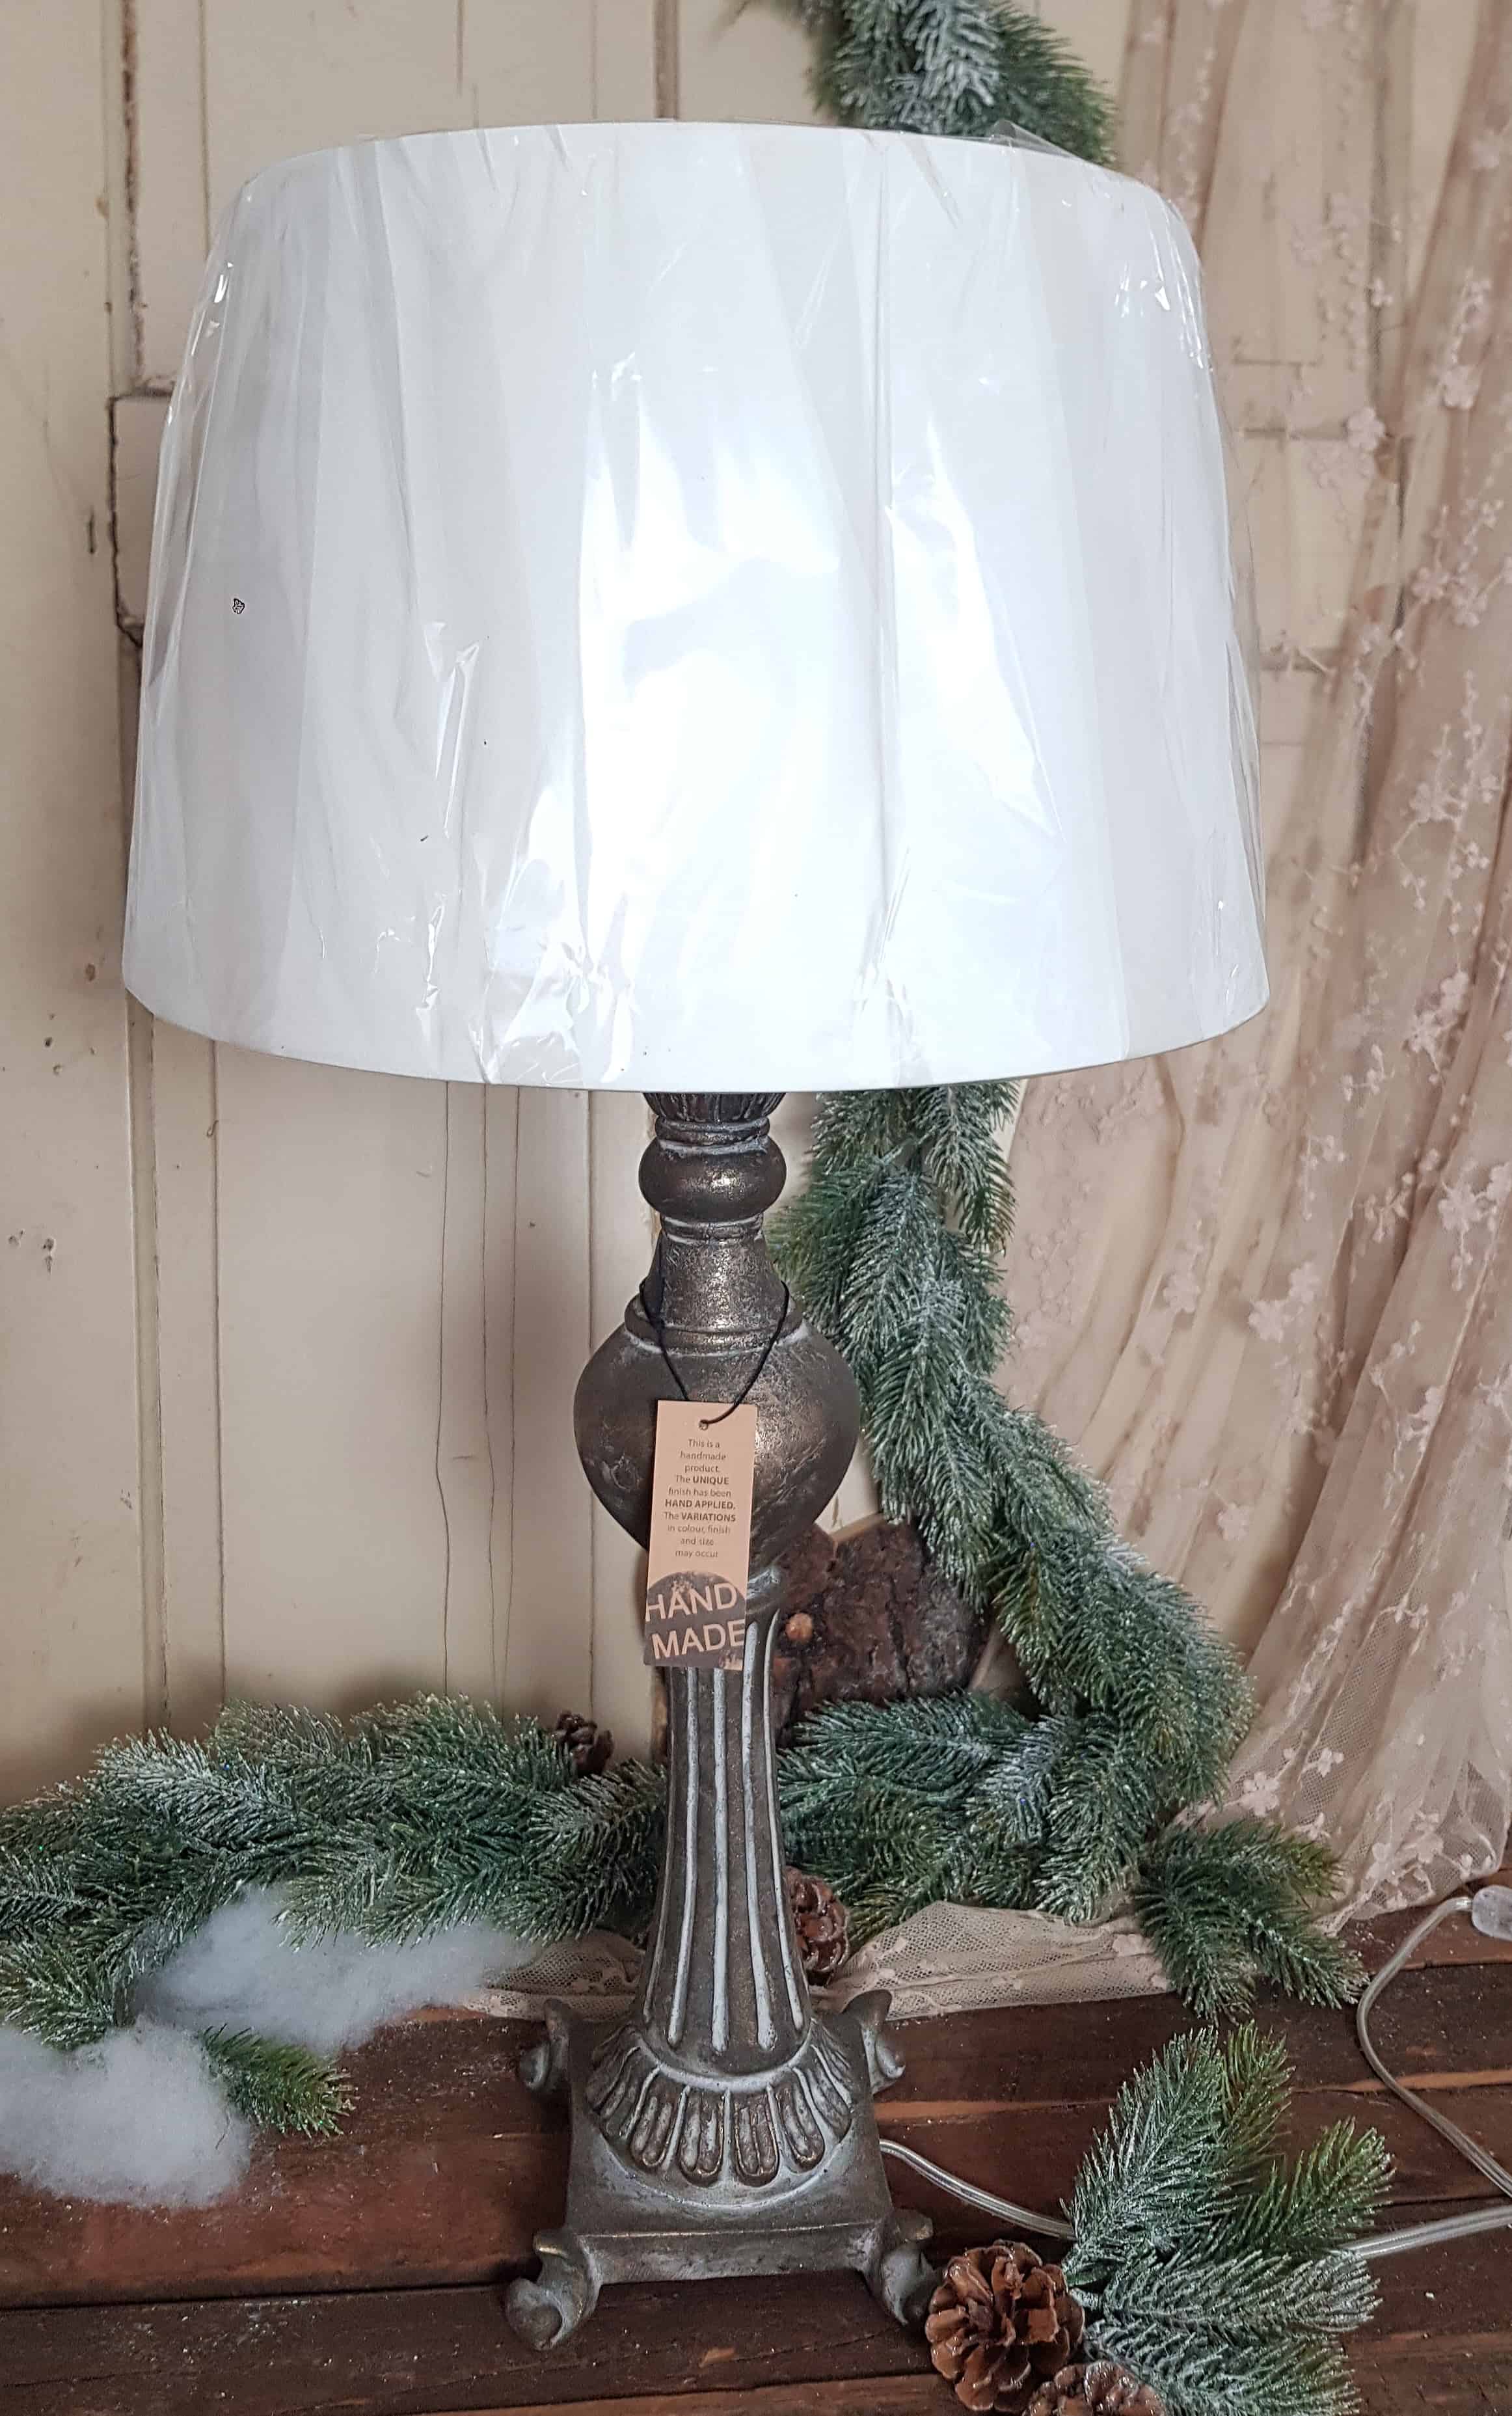 SHABBY LANDHAUS LAMPE TISCHLAMPE LANDHAUSSTIL METALL TISCHLEUCHTE 46cm HOCH NEU 